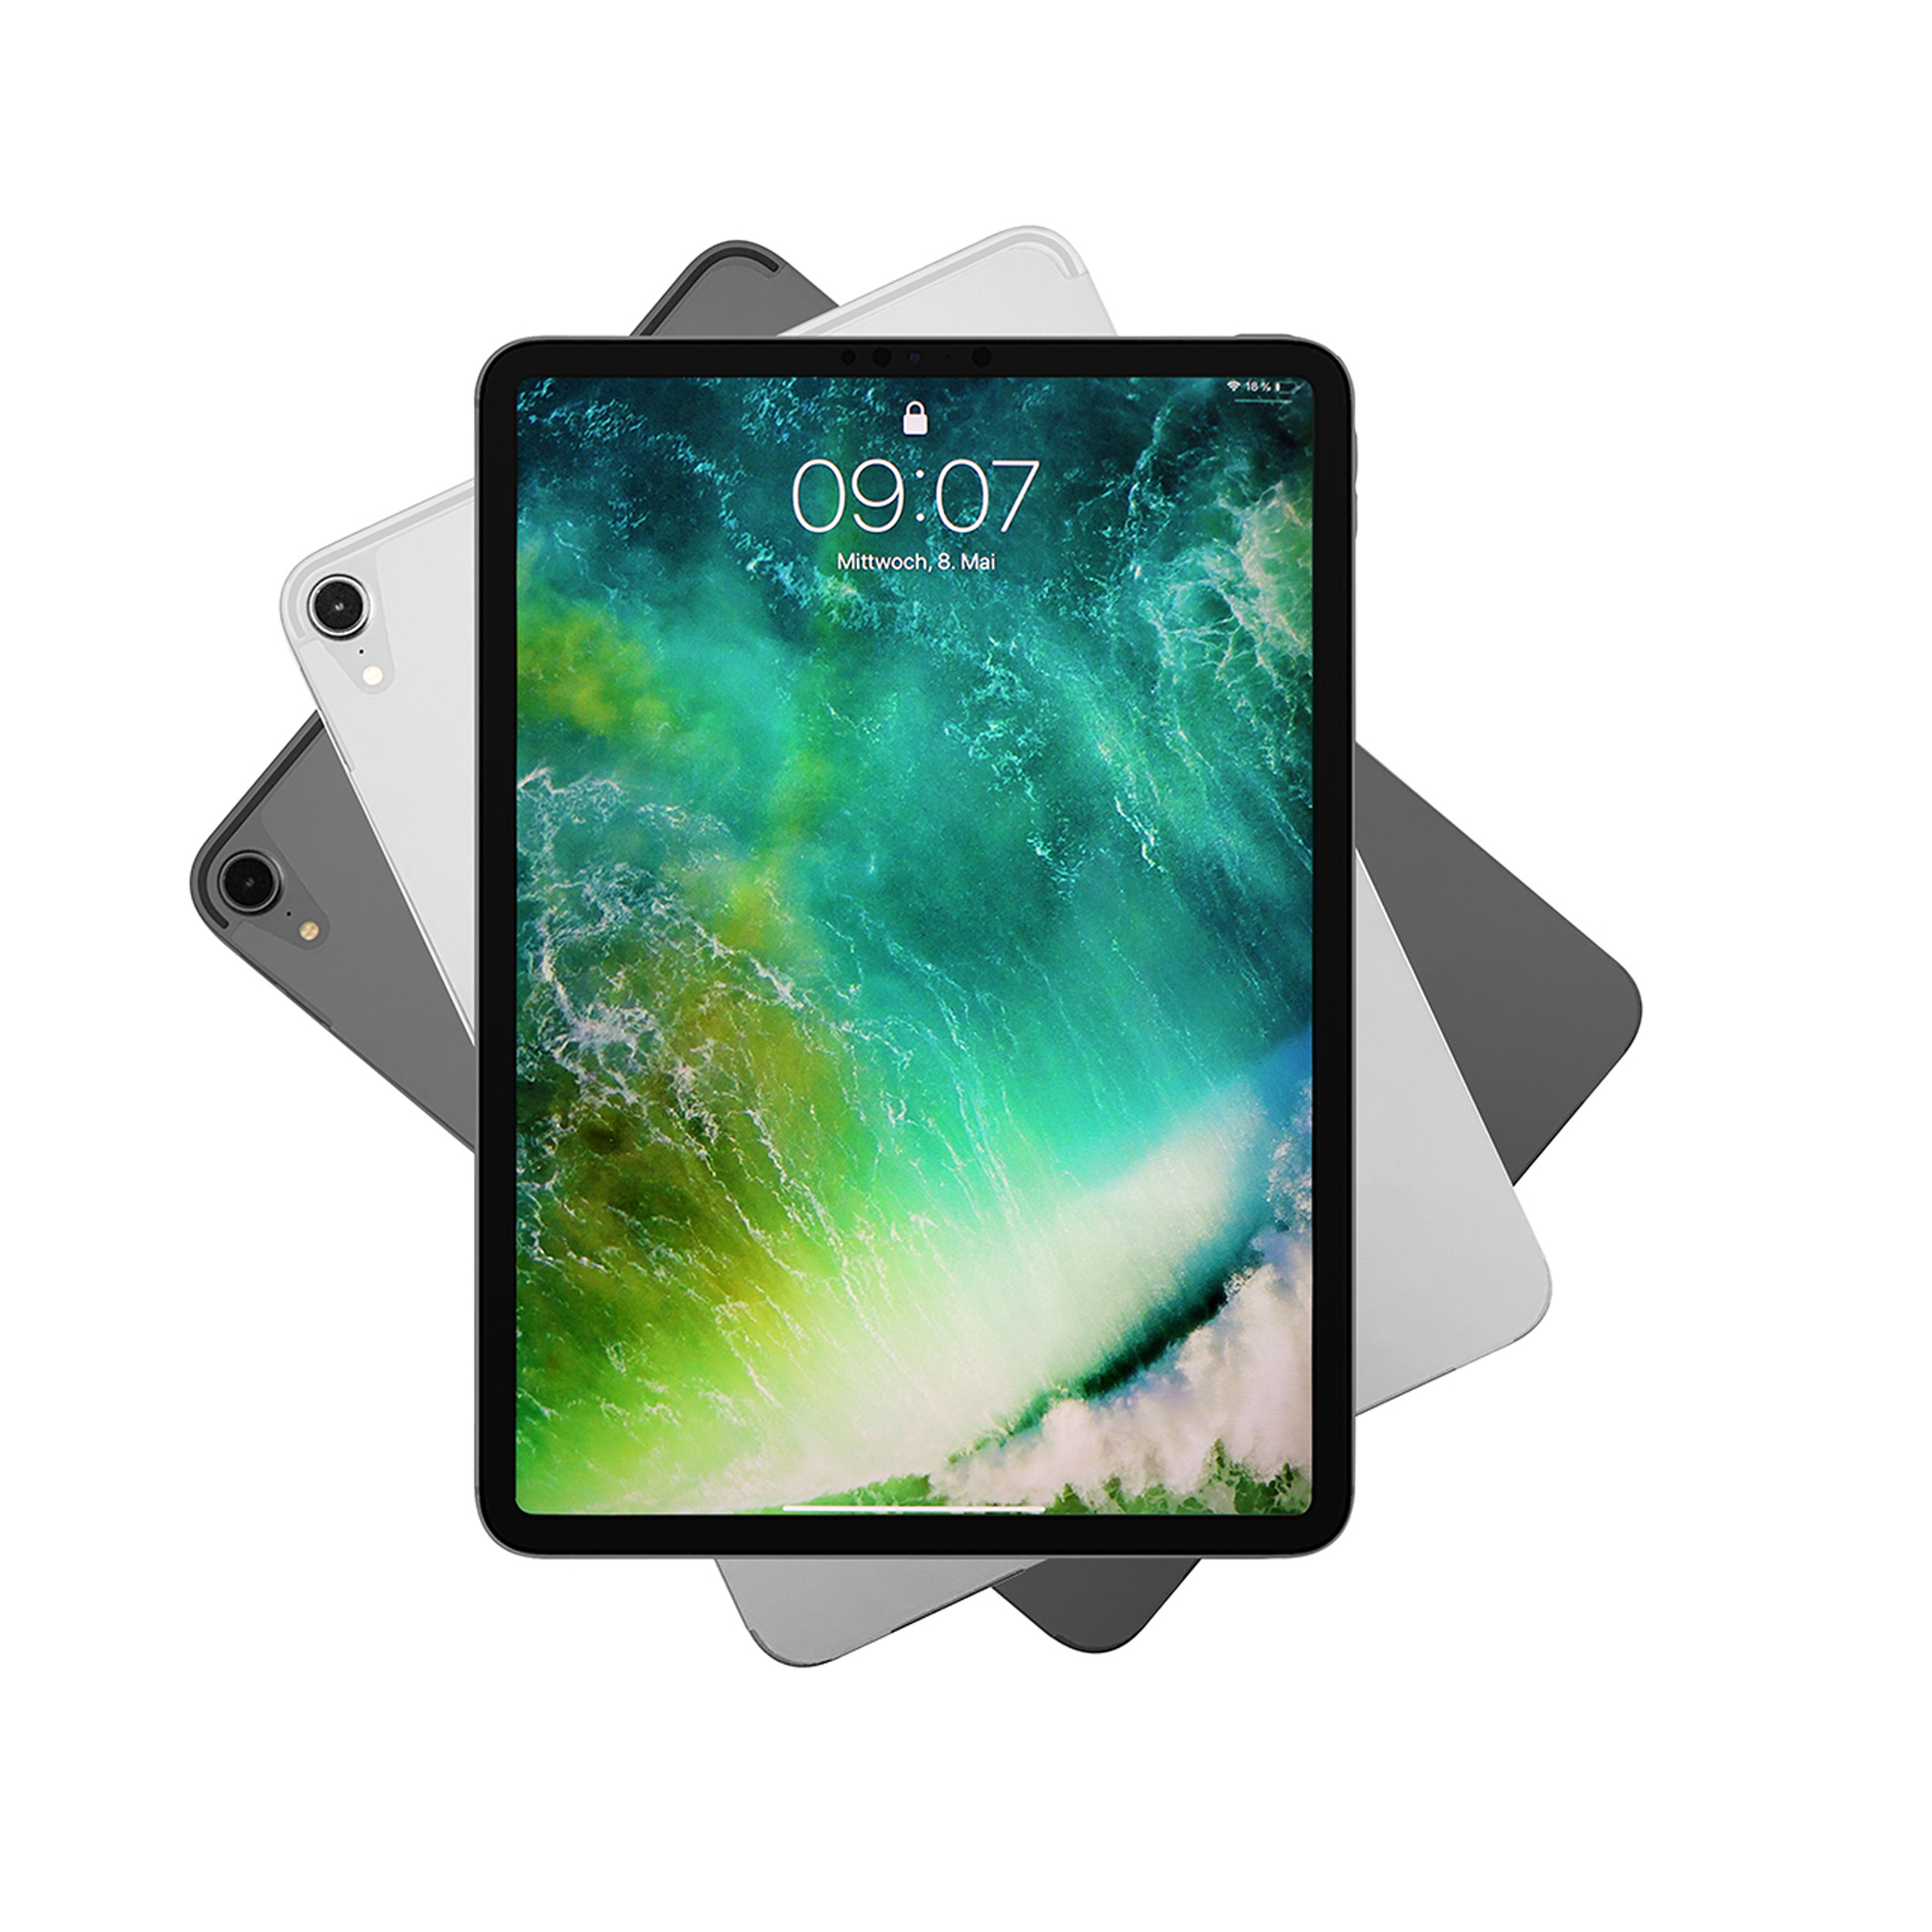 KMP Schutzfolie für iPad skin 6H space gray Apple Pro Rückseite Protective Vinylfilm, 3M-Material, Flip Gray Cover für AntiScratchLevel, 11 Space